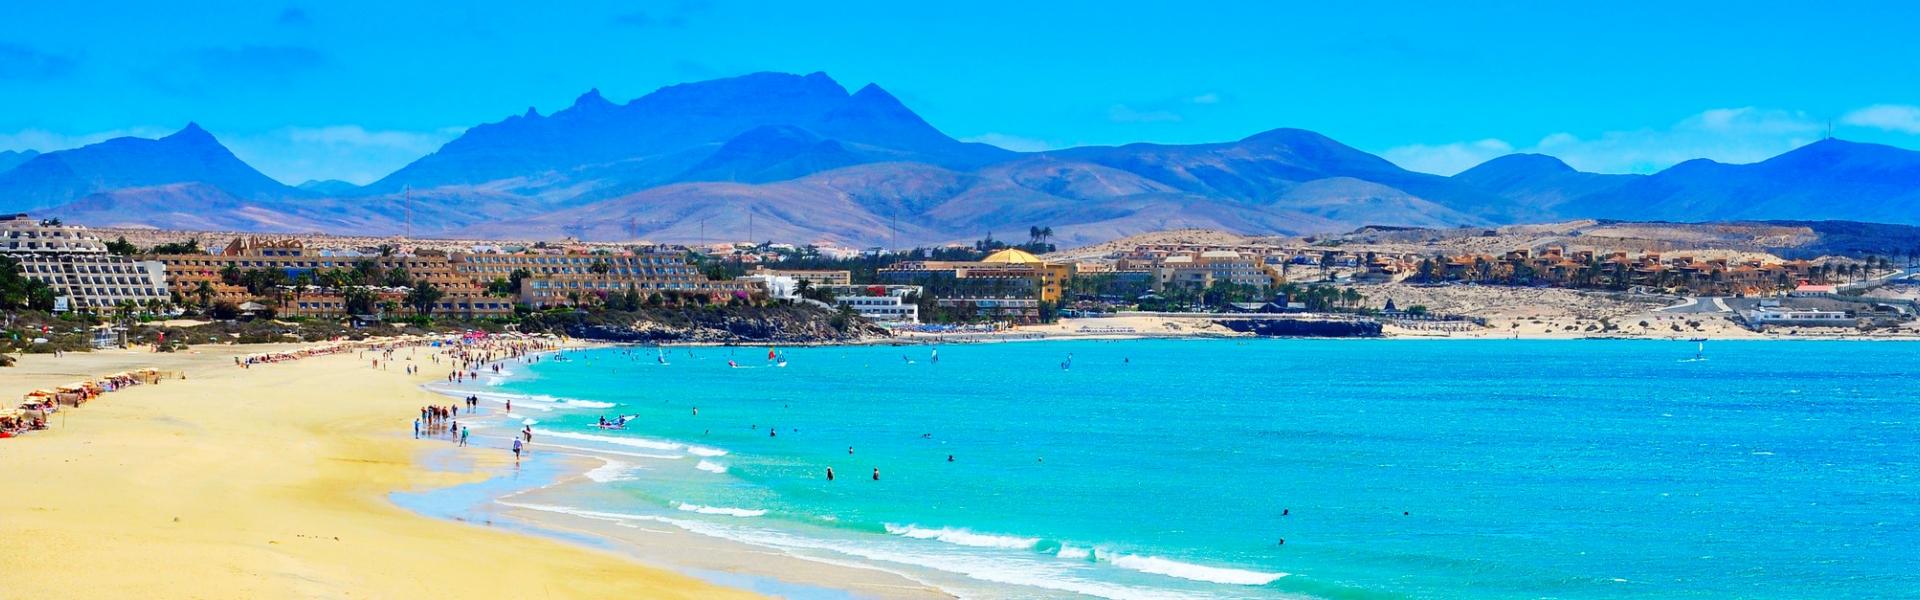 Aluguel de temporada, chalés e pousadas em Fuerteventura - LarDeFérias